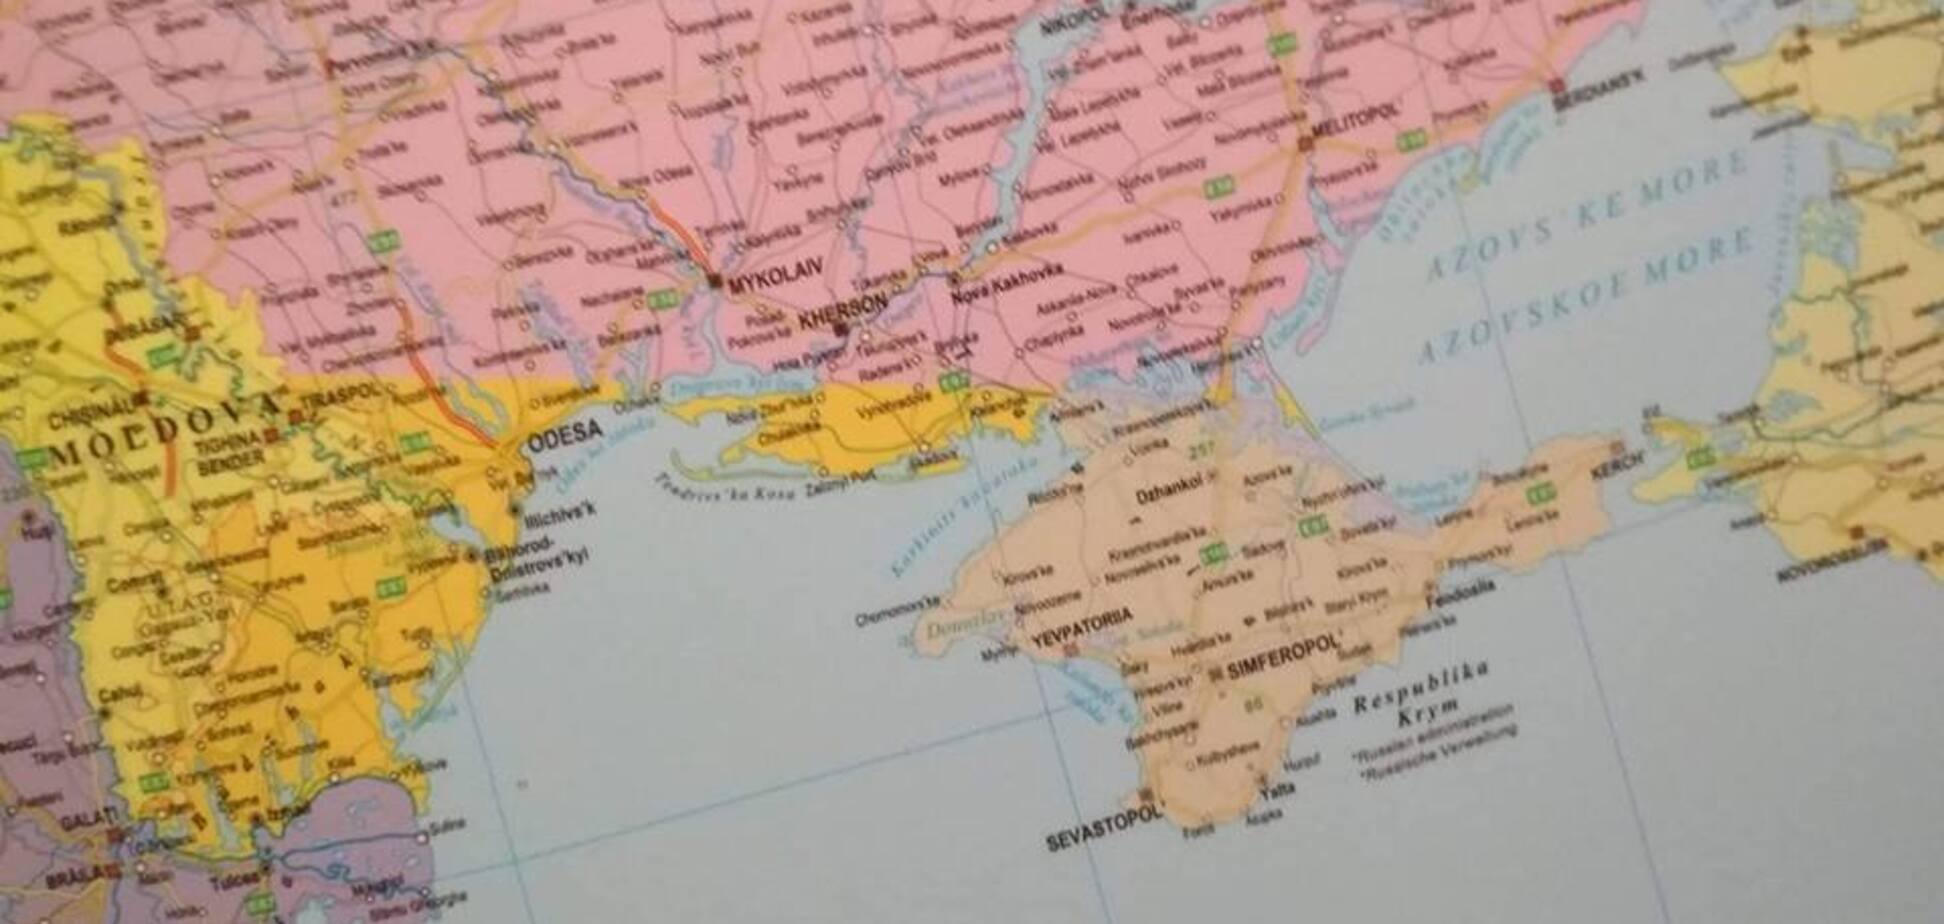 Без южных регионов: в Венгрии выпустили странную карту Украины